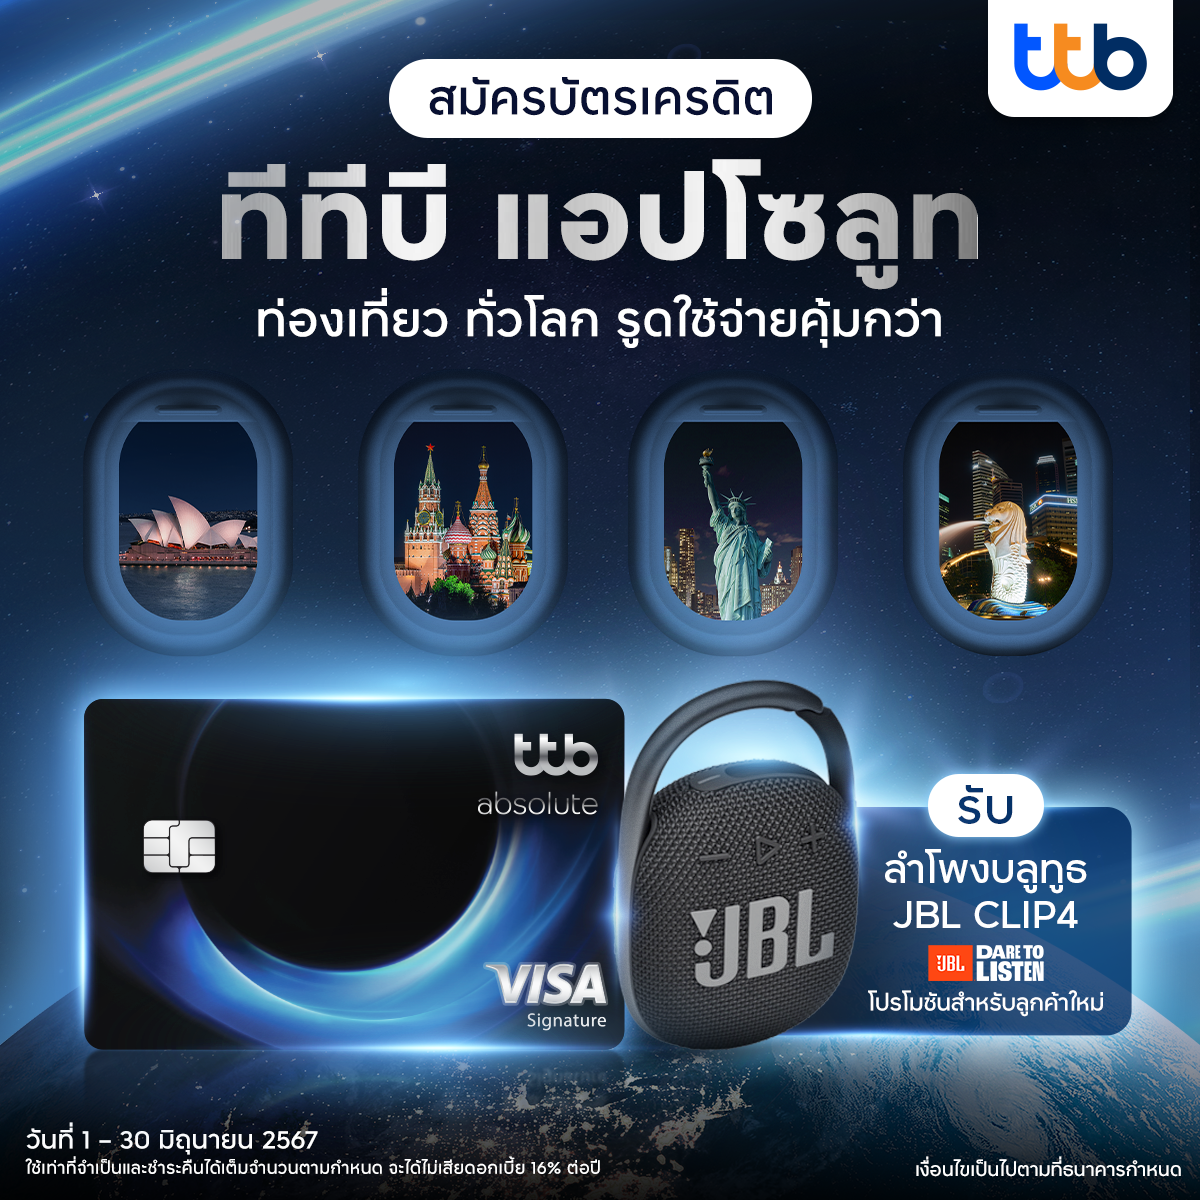 บัตรเครดิต ttb เสิร์ฟโปรเปิดบัตรใหม่ หนุนคนไทยเลือกบัตรที่ใช่ ตอบโจทย์ไลฟ์สไตล์ที่ชอบ ฉลาดใช้ ได้สิทธิประโยชน์คุ้มค่ากว่าเดิม